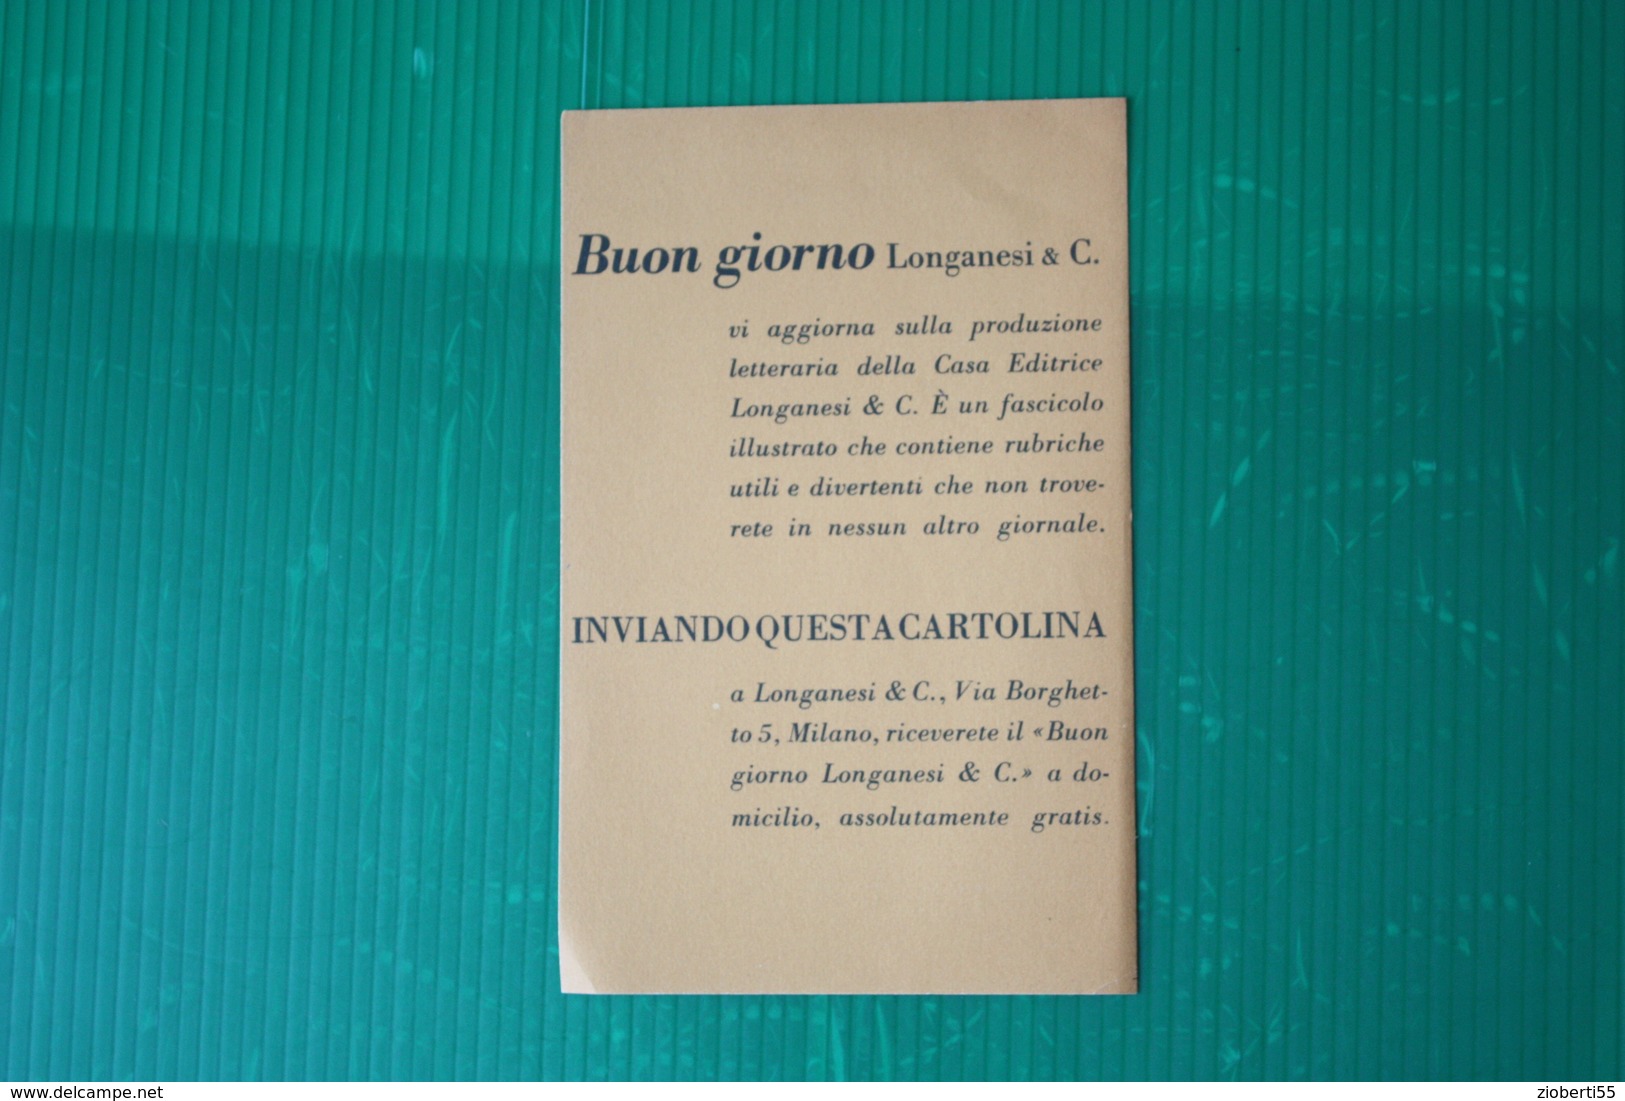 EDITORE LONGANESI - CARTOLINA RICHIESTA CATALOGO  - ANNI 50 - Other Book Accessories